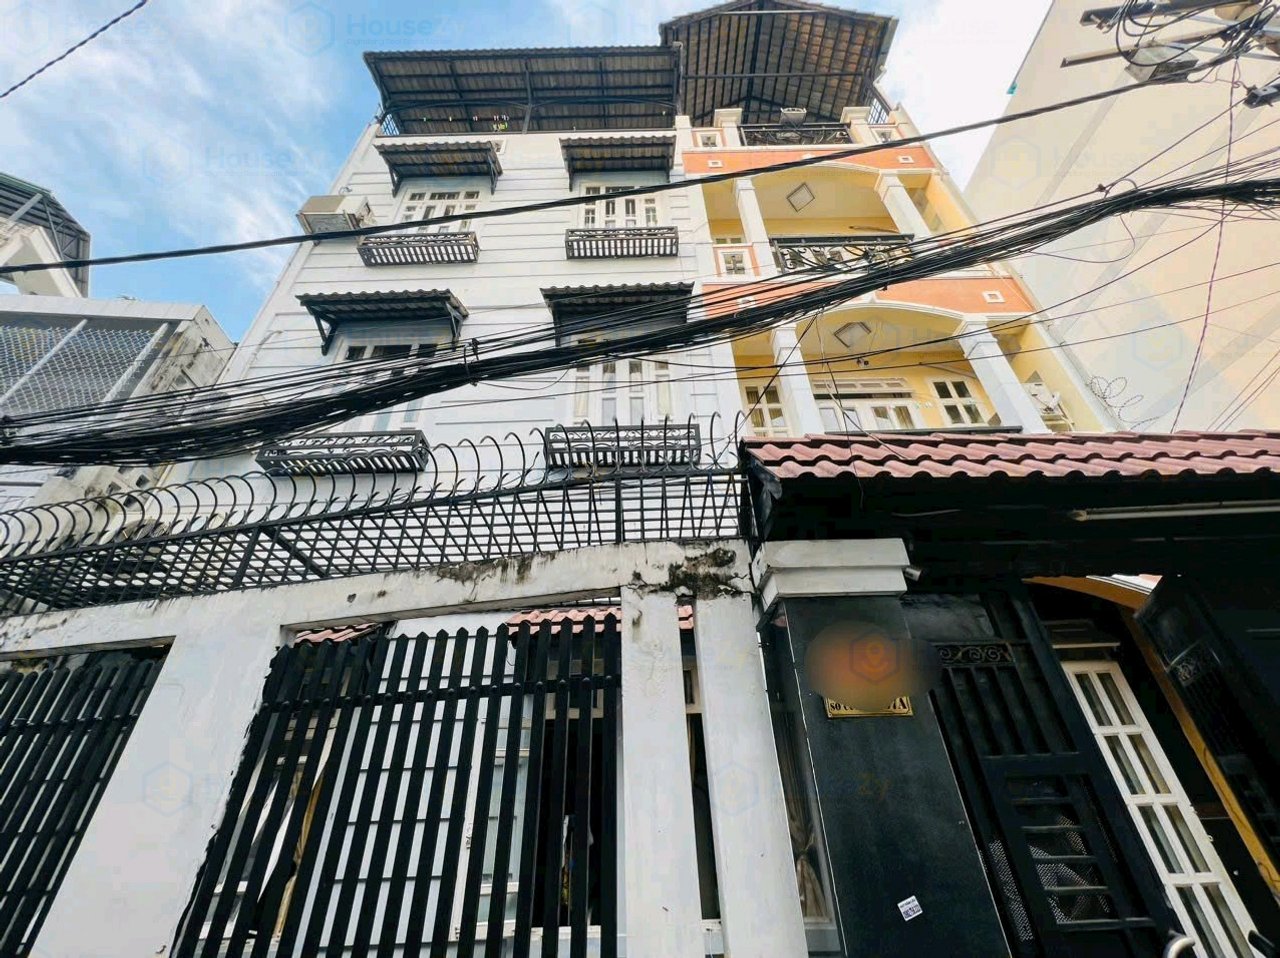 HouseZy - Bán nhà HXH Hoàng Hoa Thám, Phường 5, Bình Thạnh, Thành phố Hồ Chí Minh 72300, Vietnam